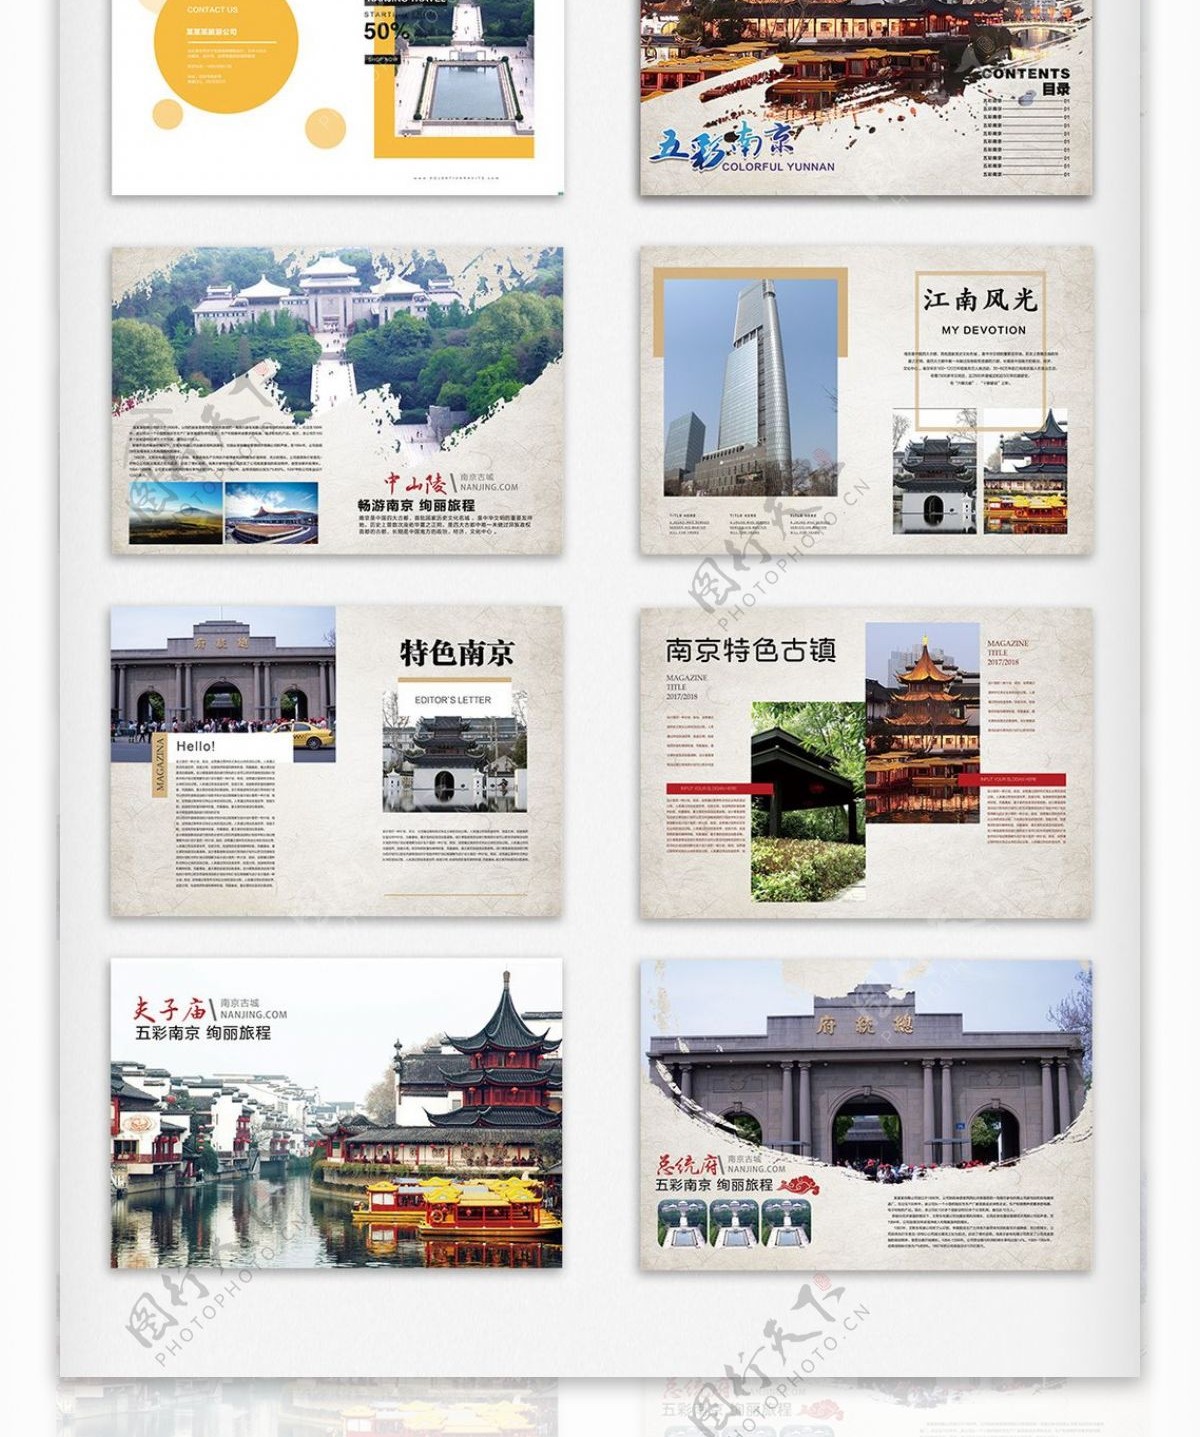 原创中国风南京旅游画册